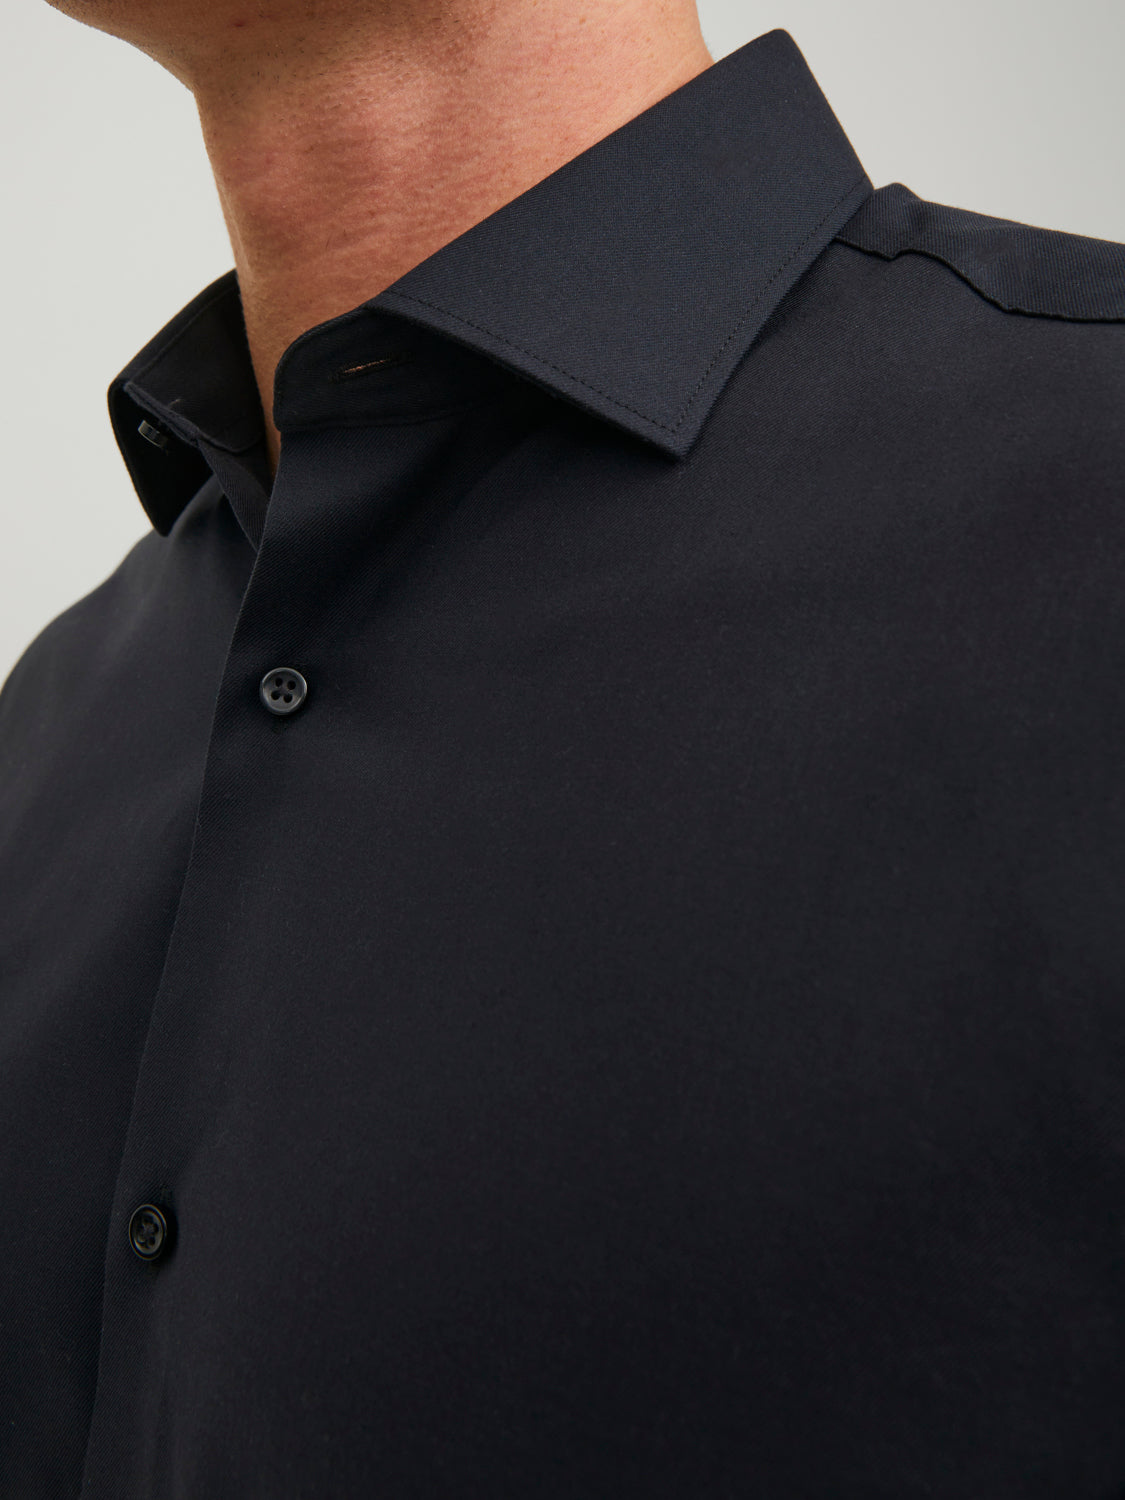 JPRBLAPARKER Shirts - Black